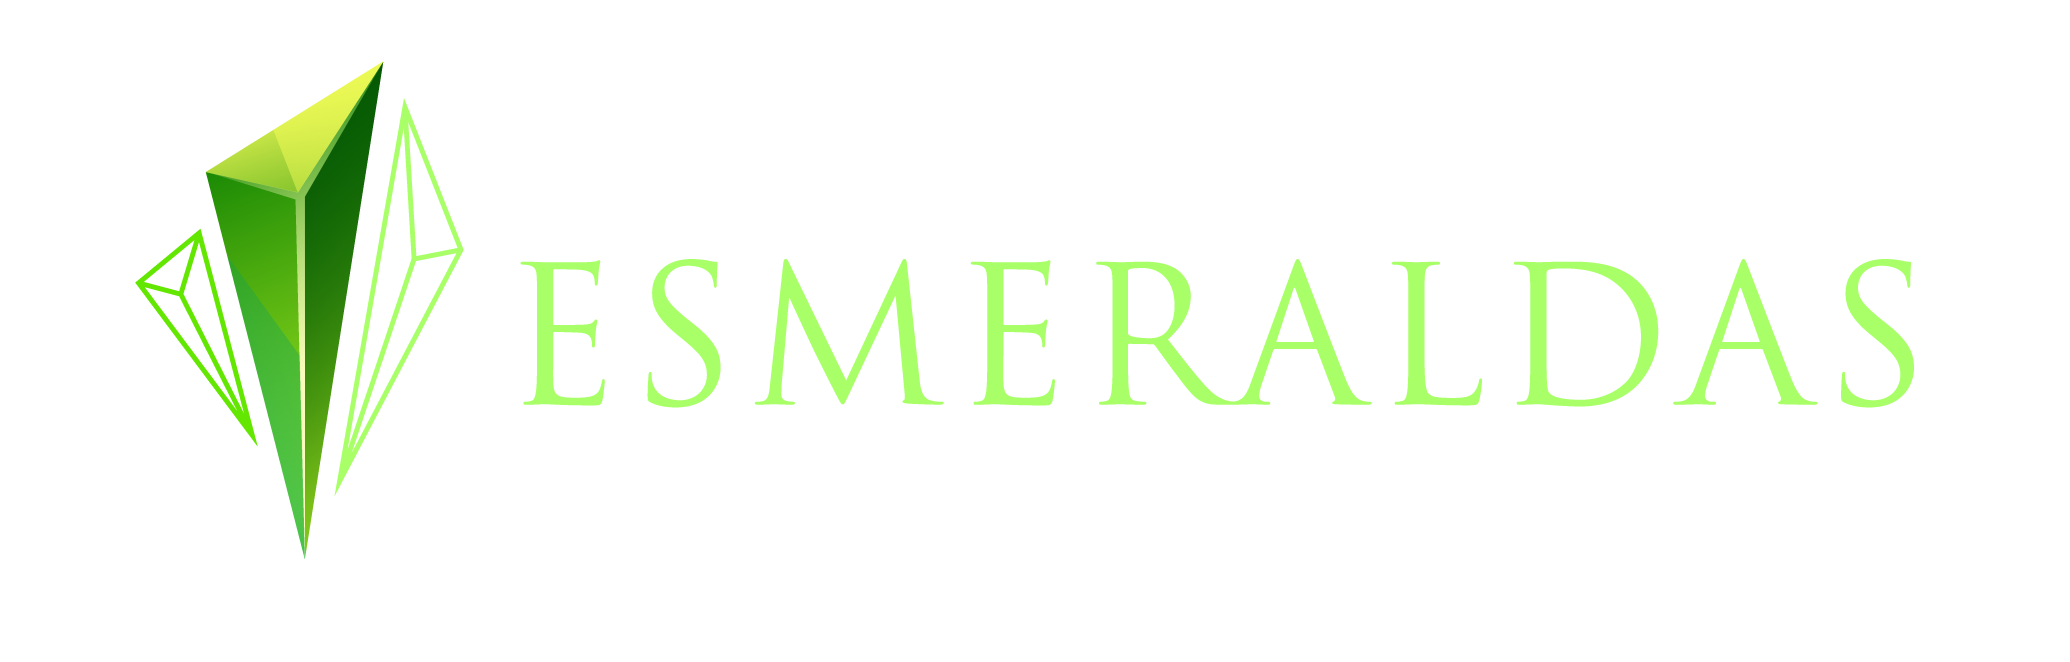 Feira das Esmeraldas Campos Verdes